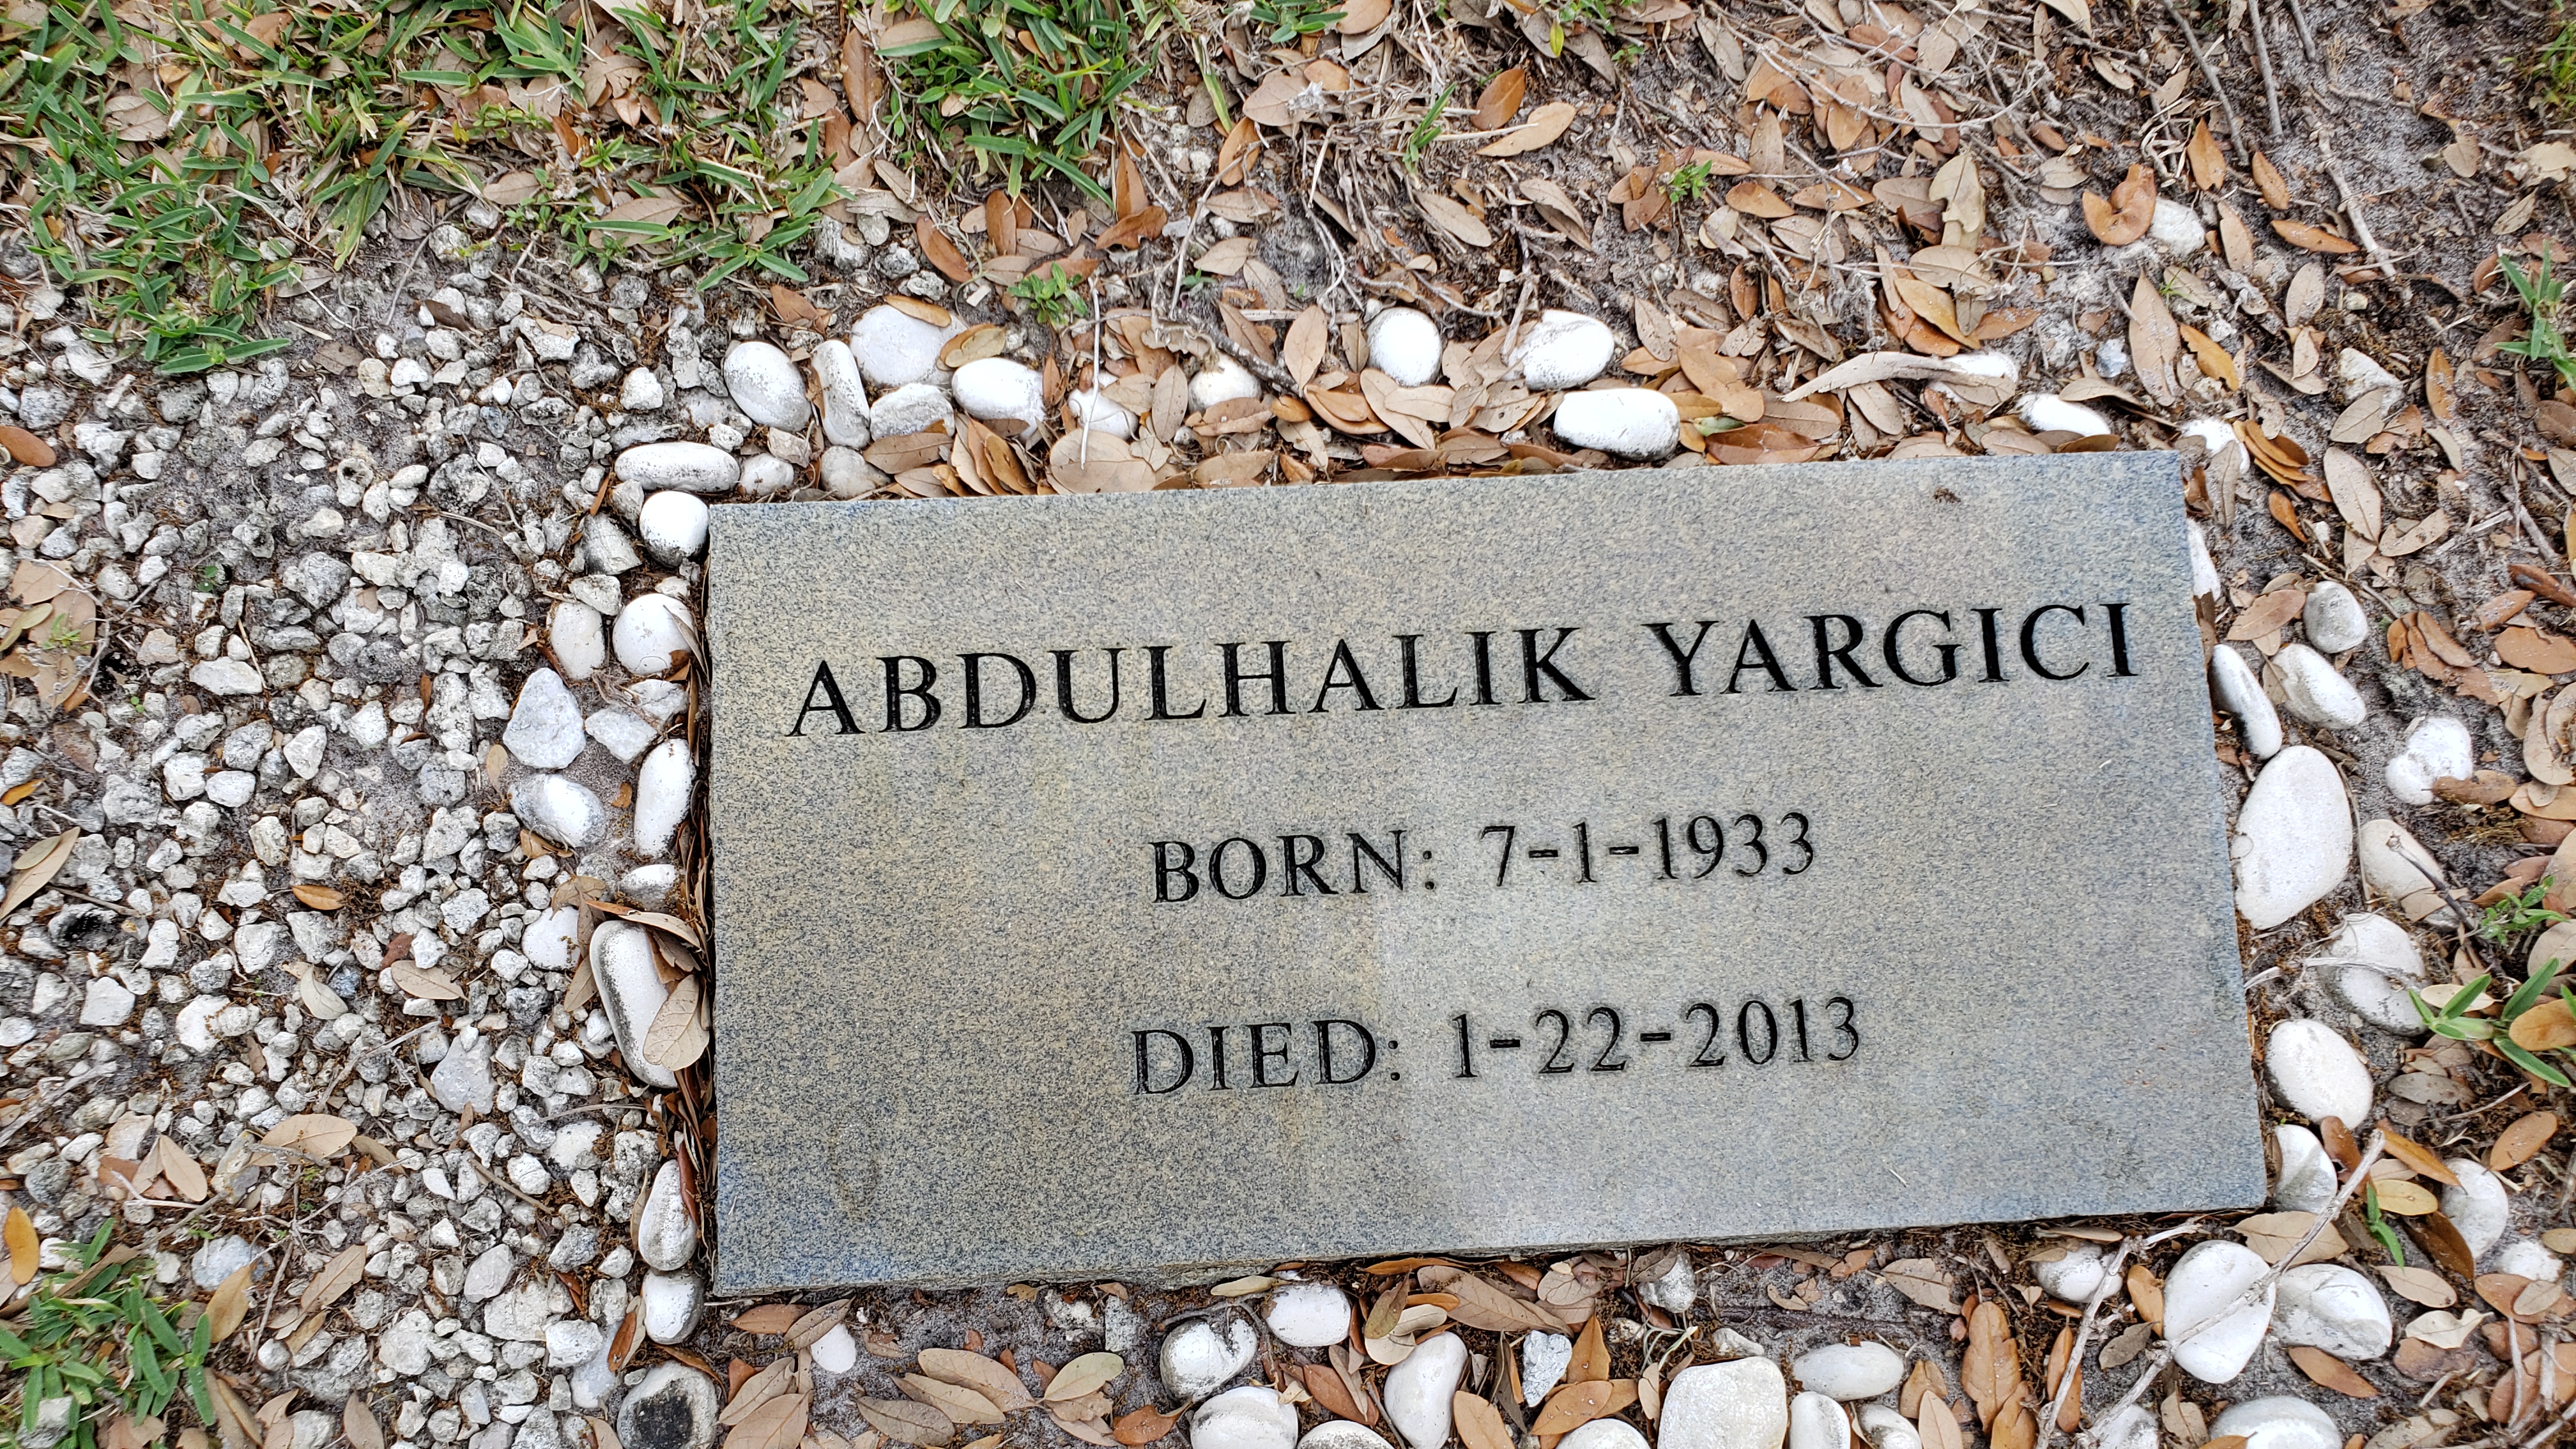 Abdulhalik Yargici